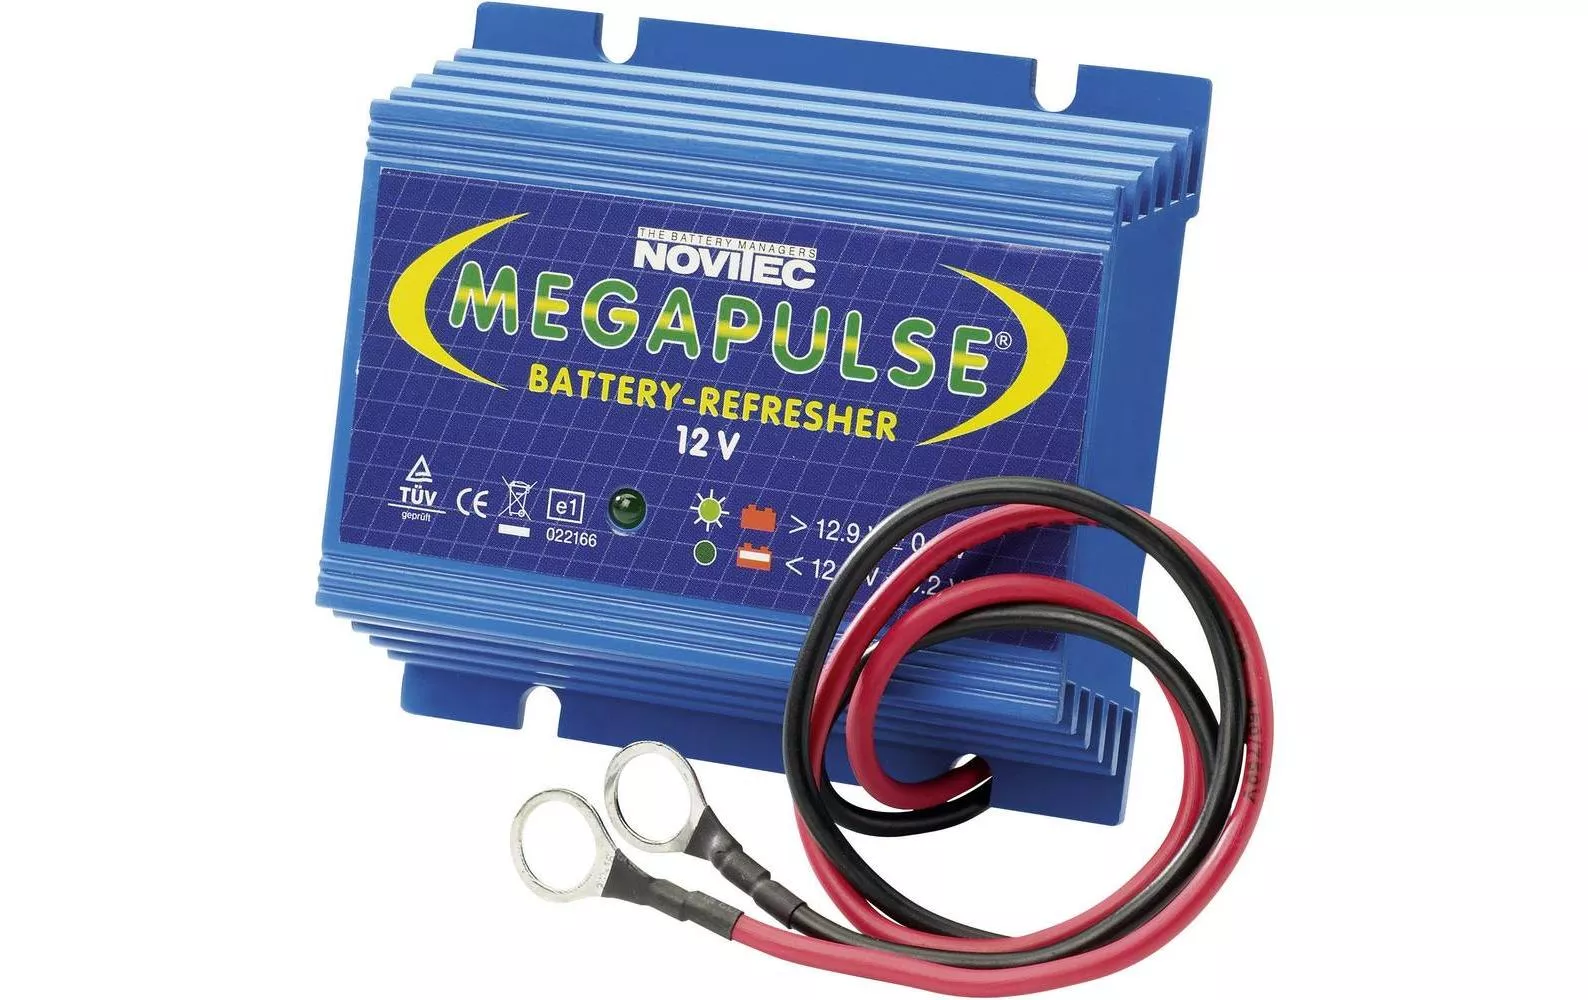 Pulseur de batterie Remise à niveau de la batterie au plomb Megapulse 12 V